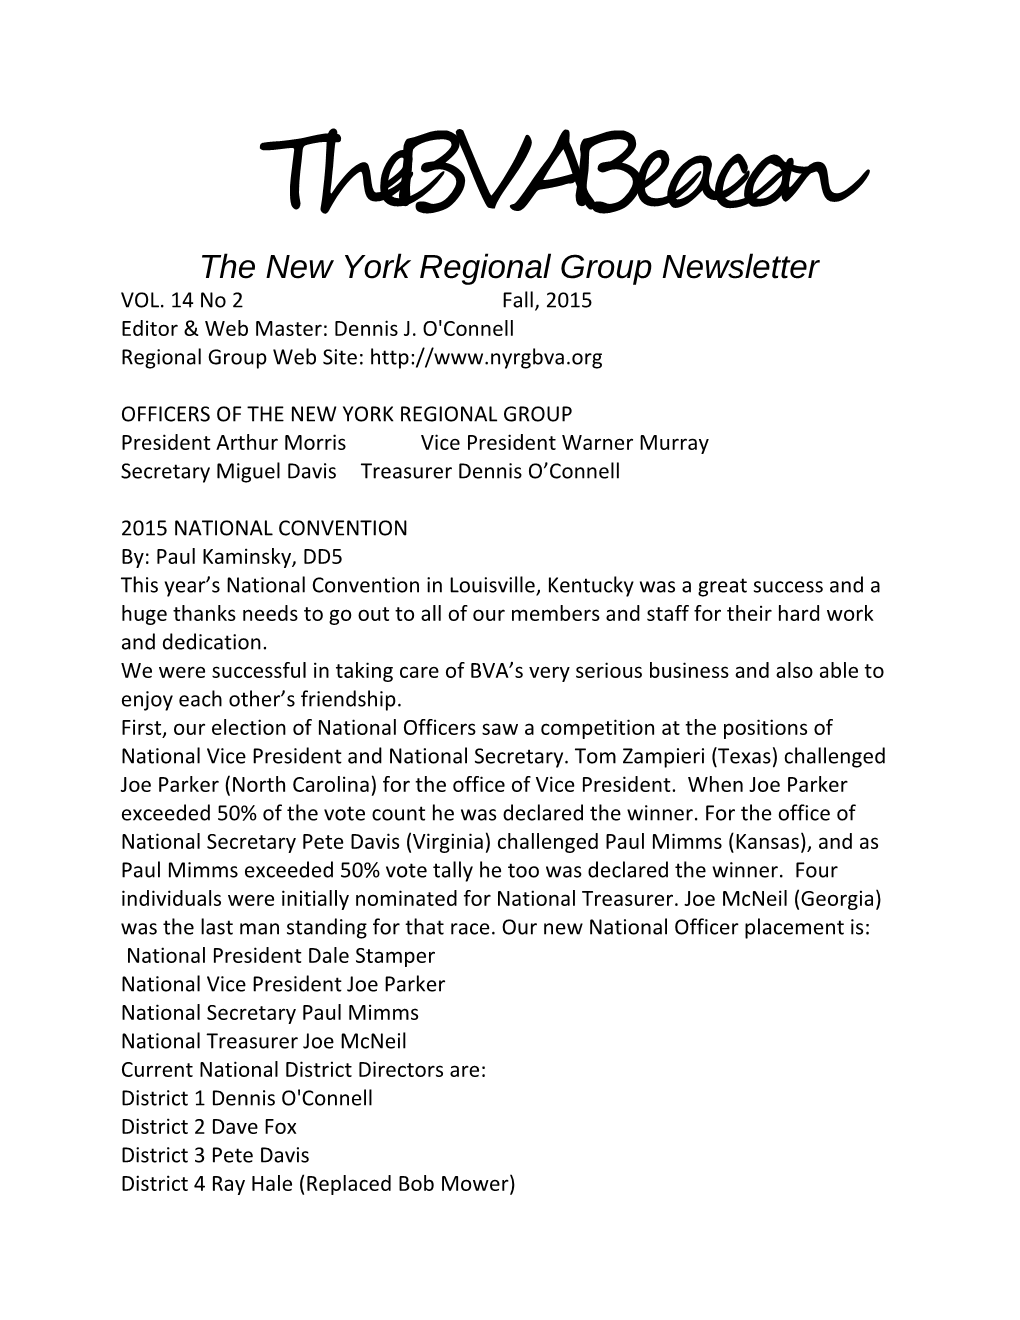 The BVA Beacon